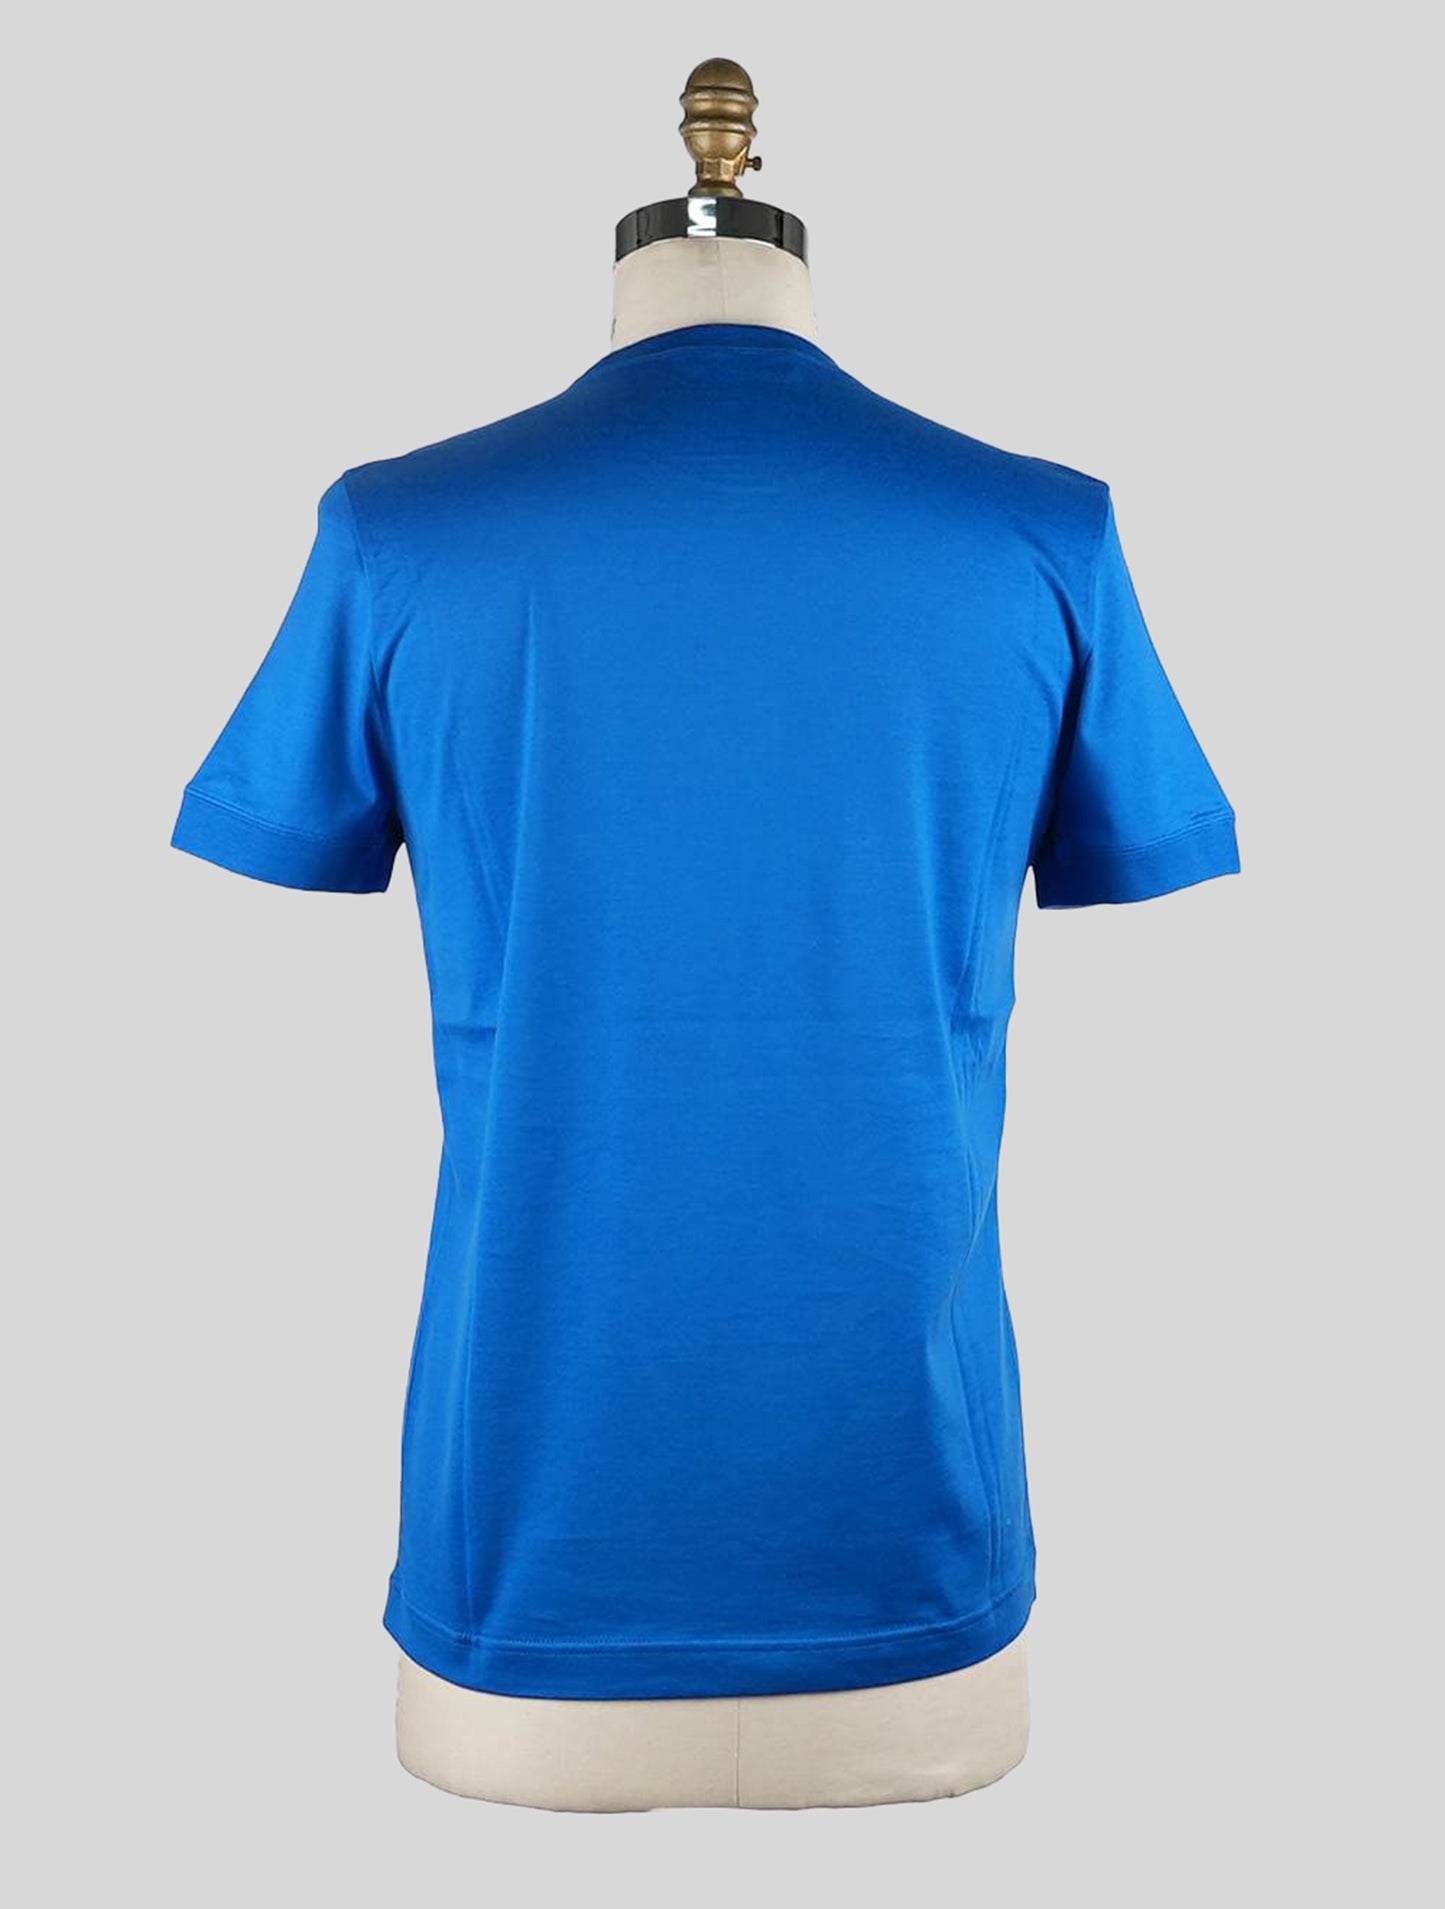 Knt kiton modrá bavlněná tričko